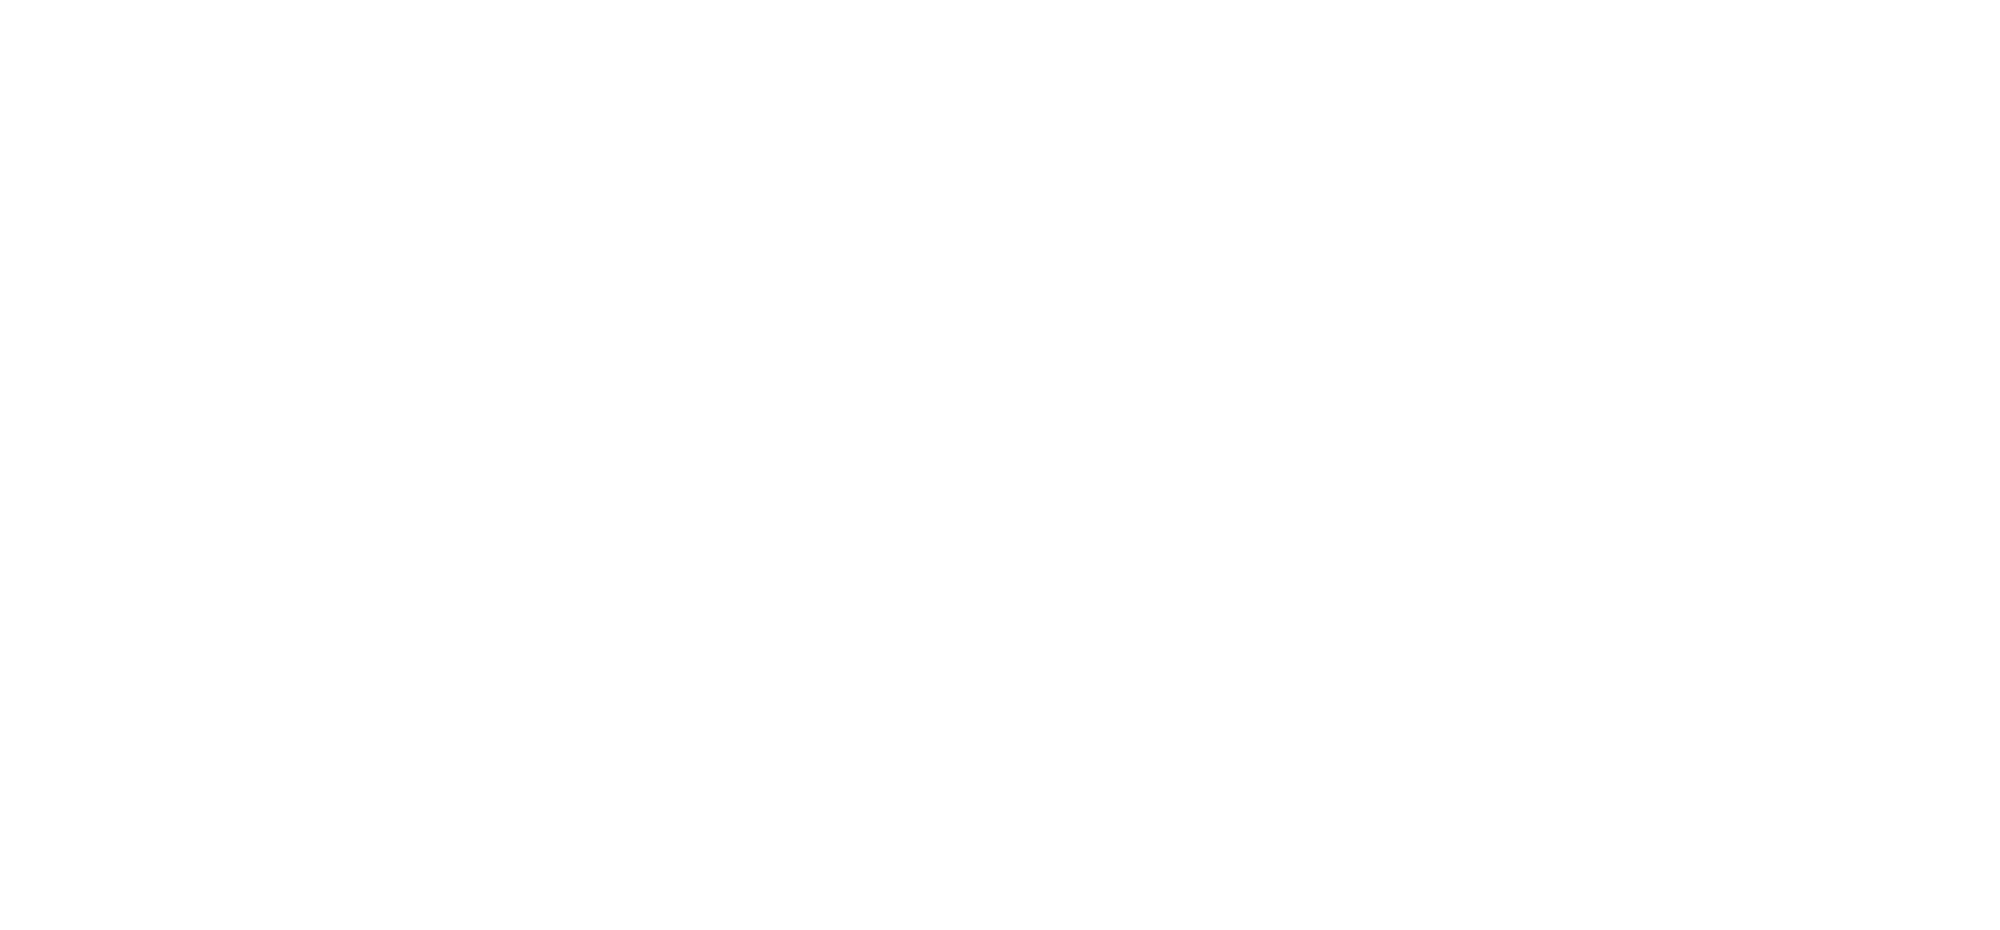 Het logo van Sortare in het wit.